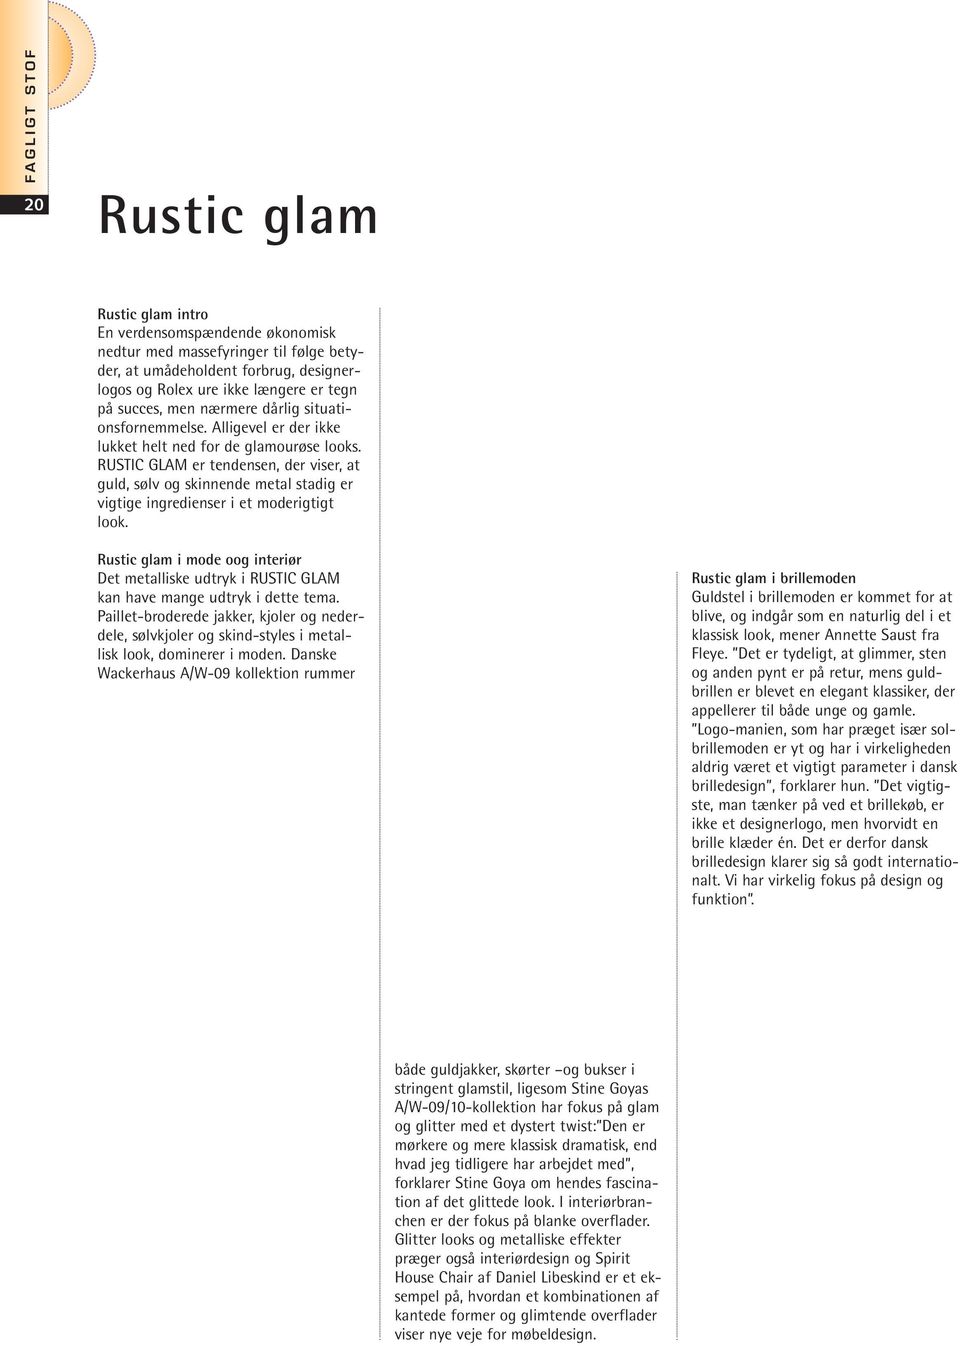 RUSTIC GLAM er tendensen, der viser, at guld, sølv og skinnende metal stadig er vigtige ingredienser i et moderigtigt look.